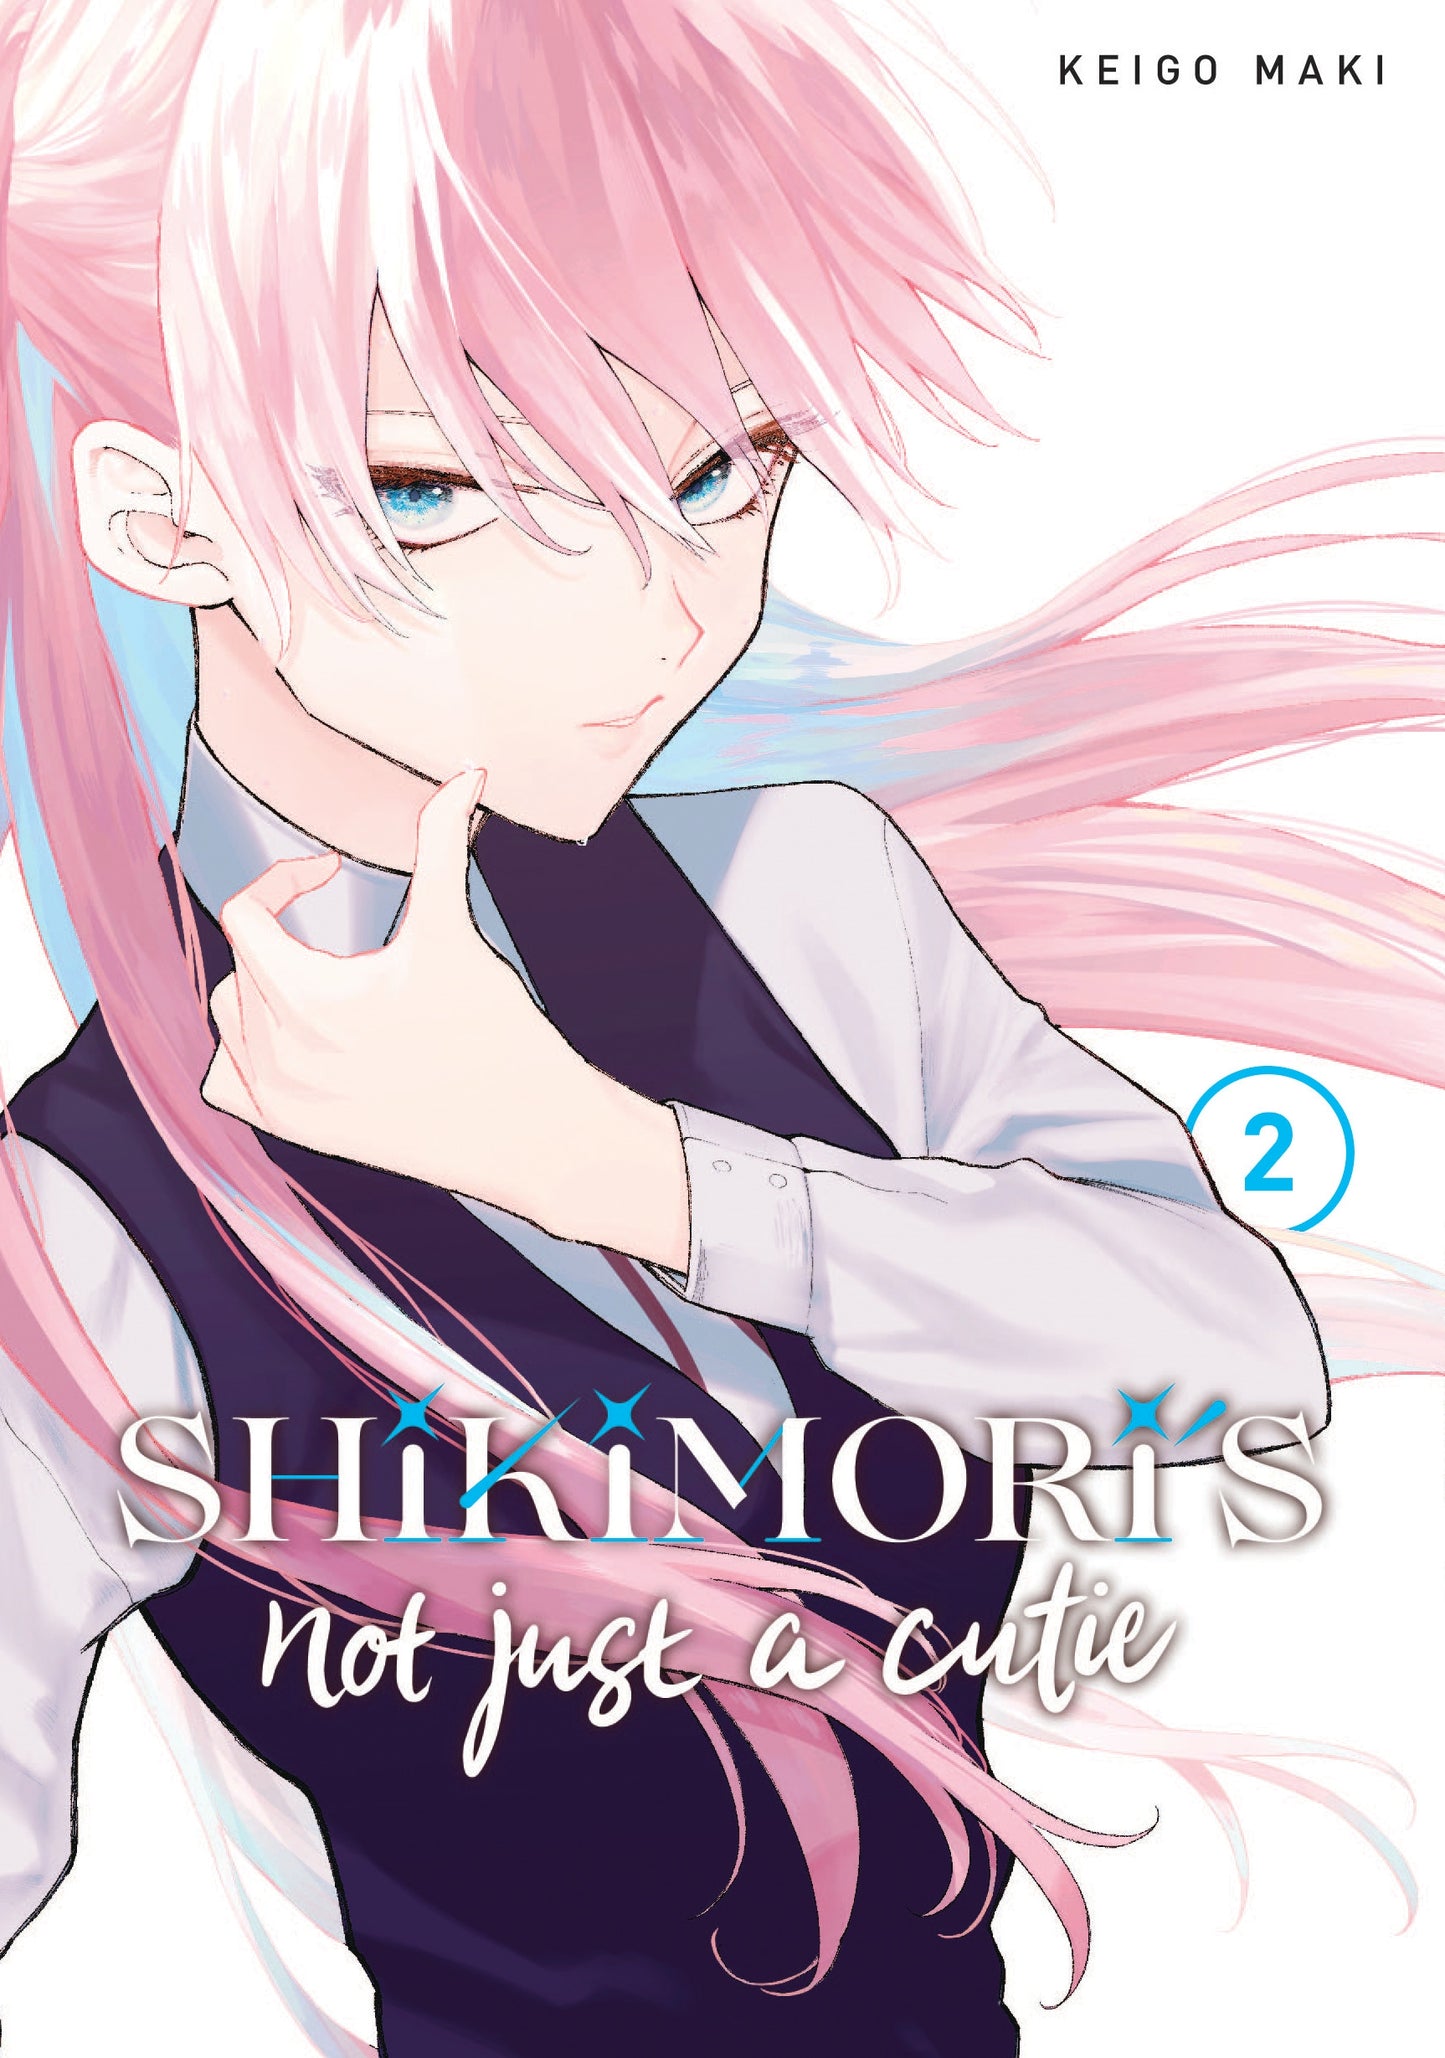 Shikimori's Not Just a Cutie 2 - Manga Warehouse